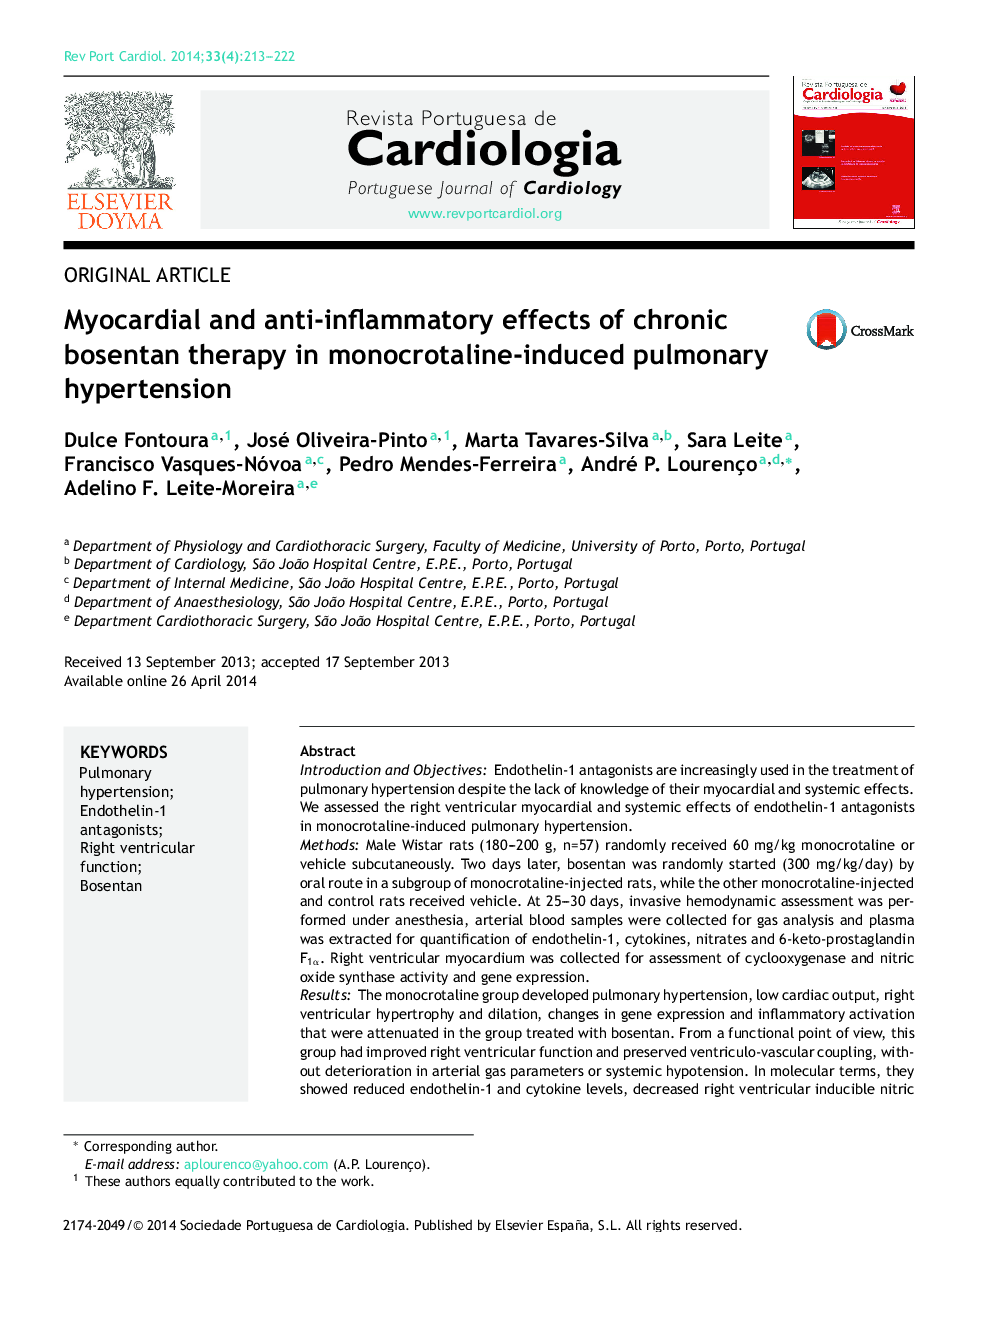 Myocardial and antiâinflammatory effects of chronic bosentan therapy in monocrotalineâinduced pulmonary hypertension